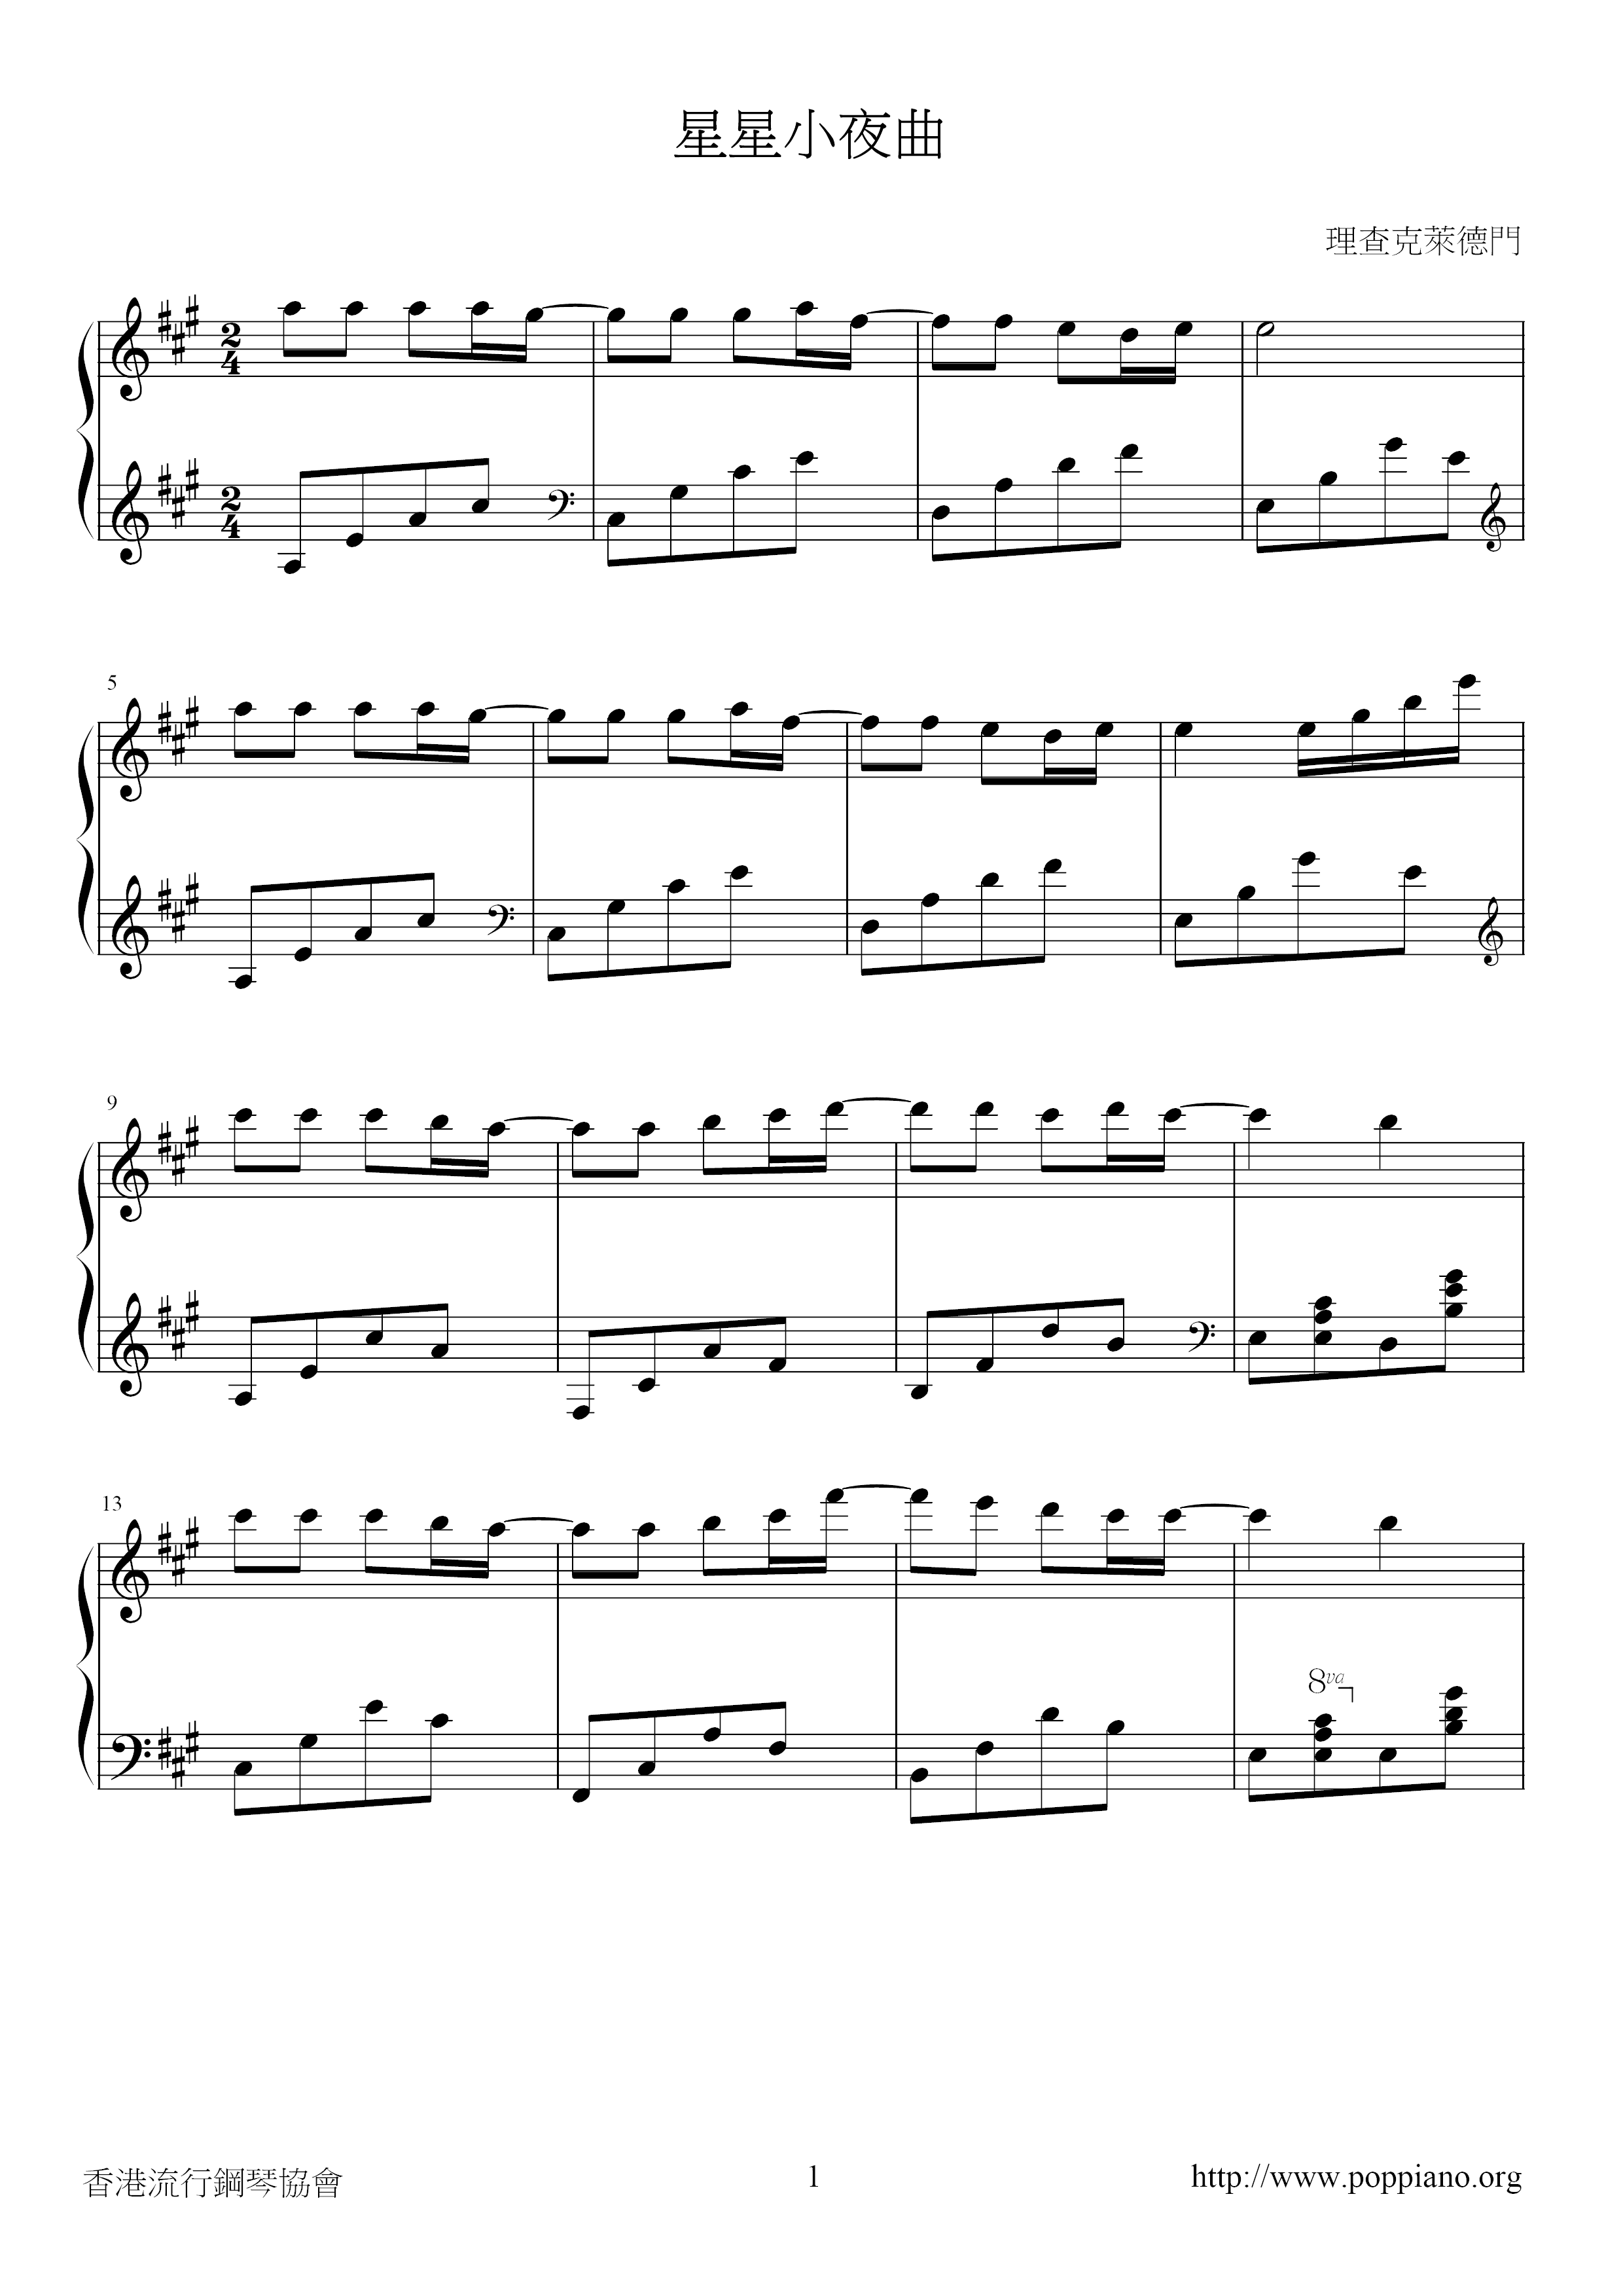 Star Serenade Score